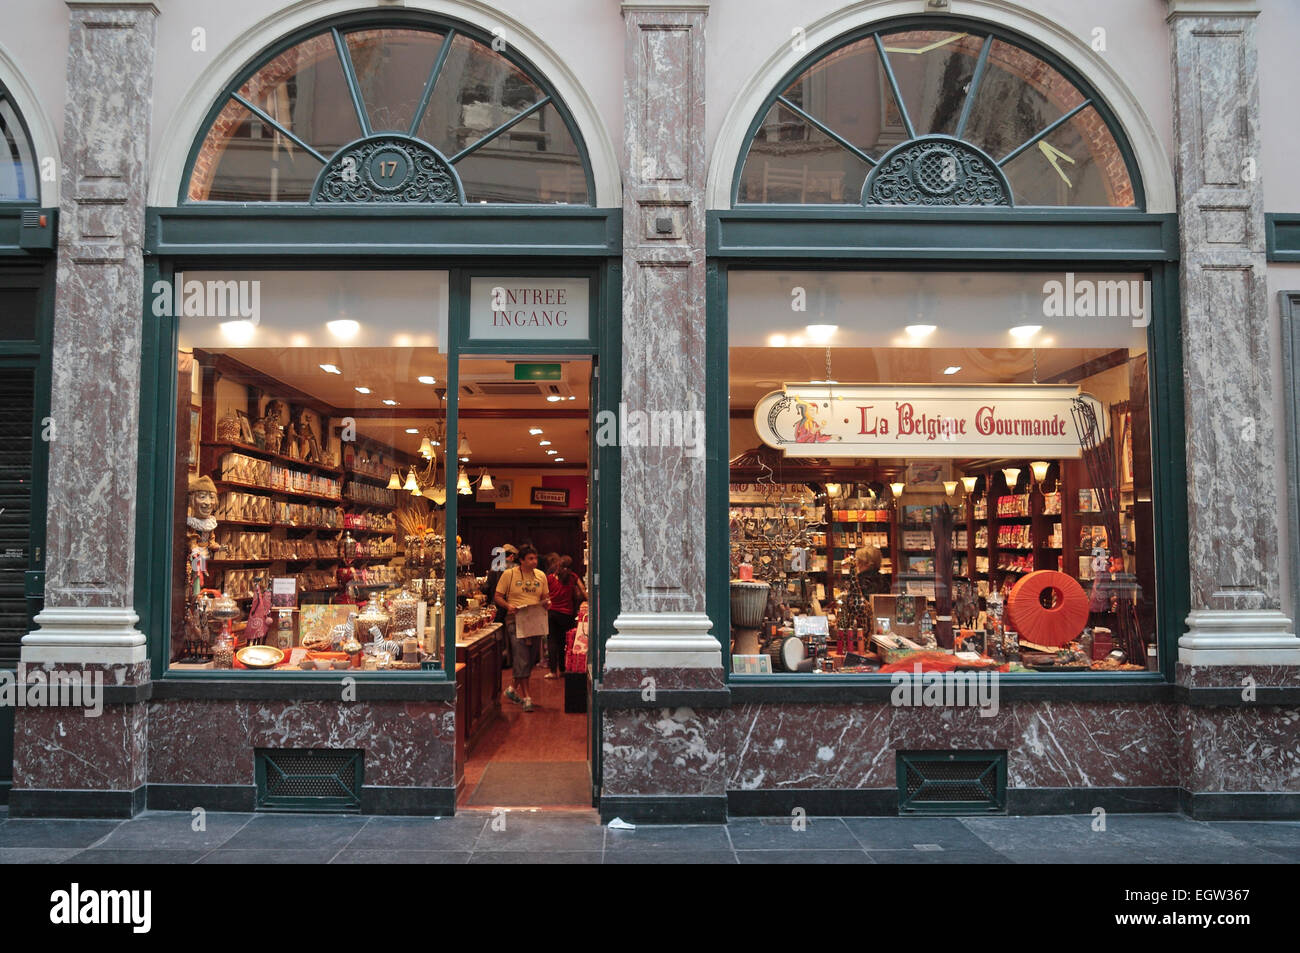 The 'La Belgique Gourmande' chocolate shop in Galerie de la Reine in Brussels, Belgium. Stock Photo